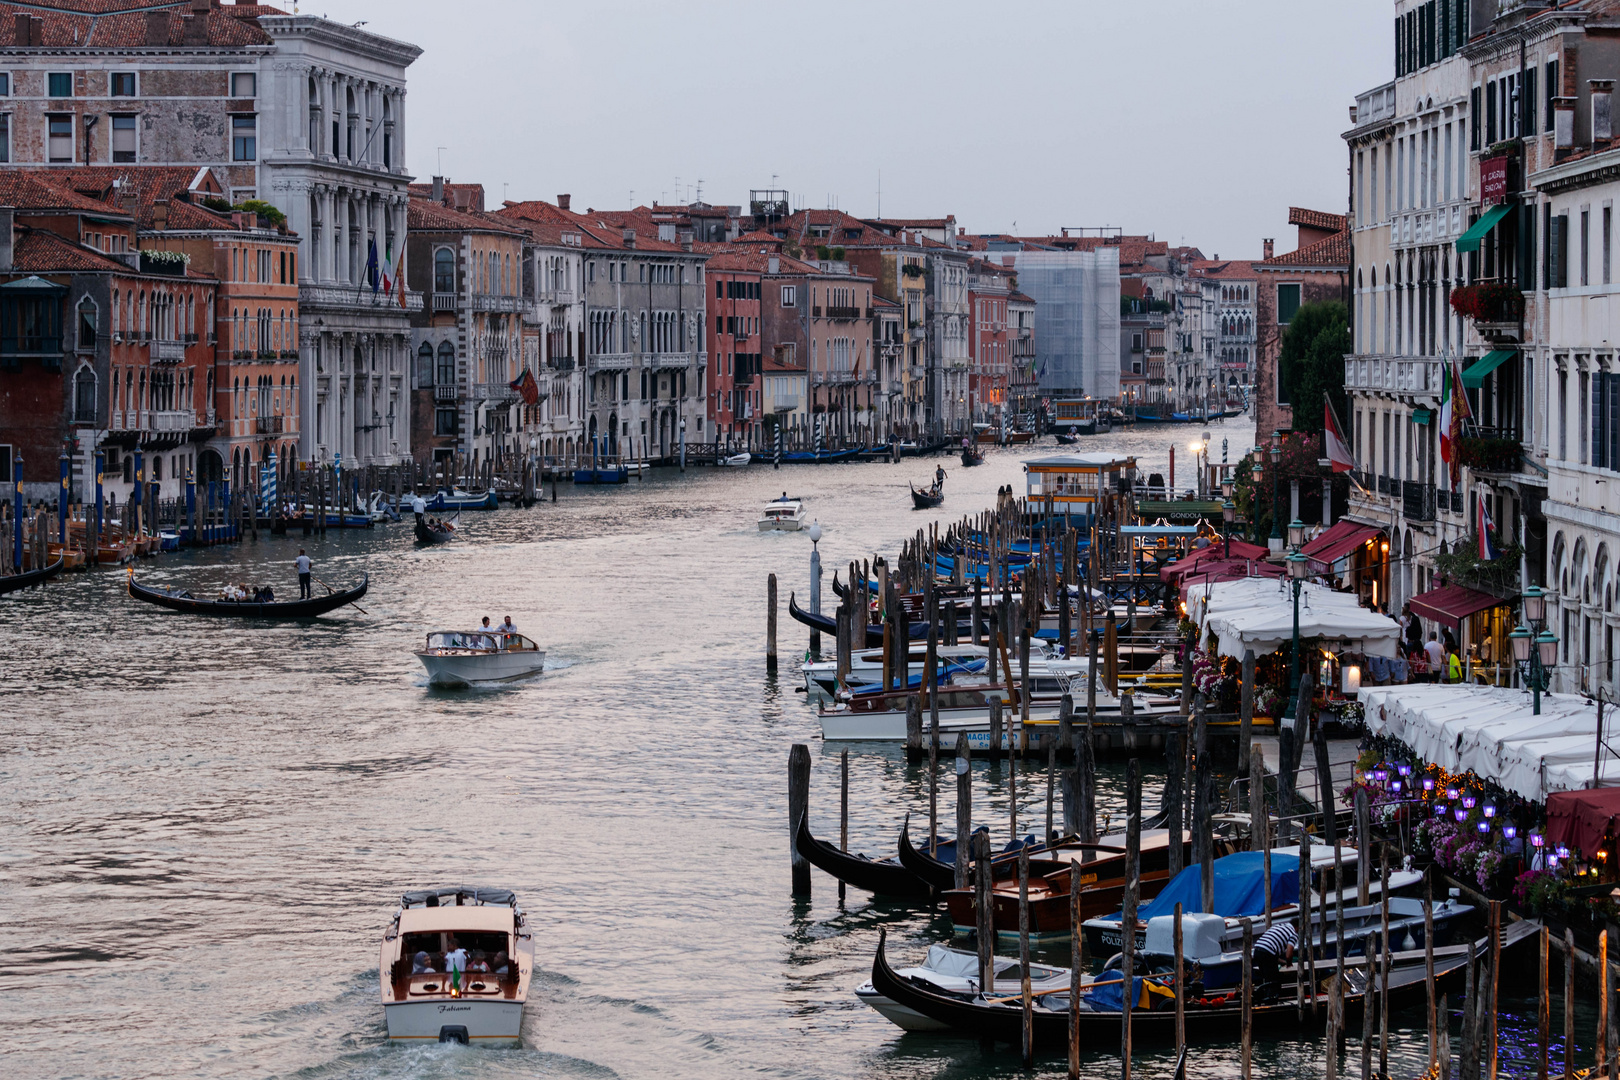 Le Grand Canal / Venise